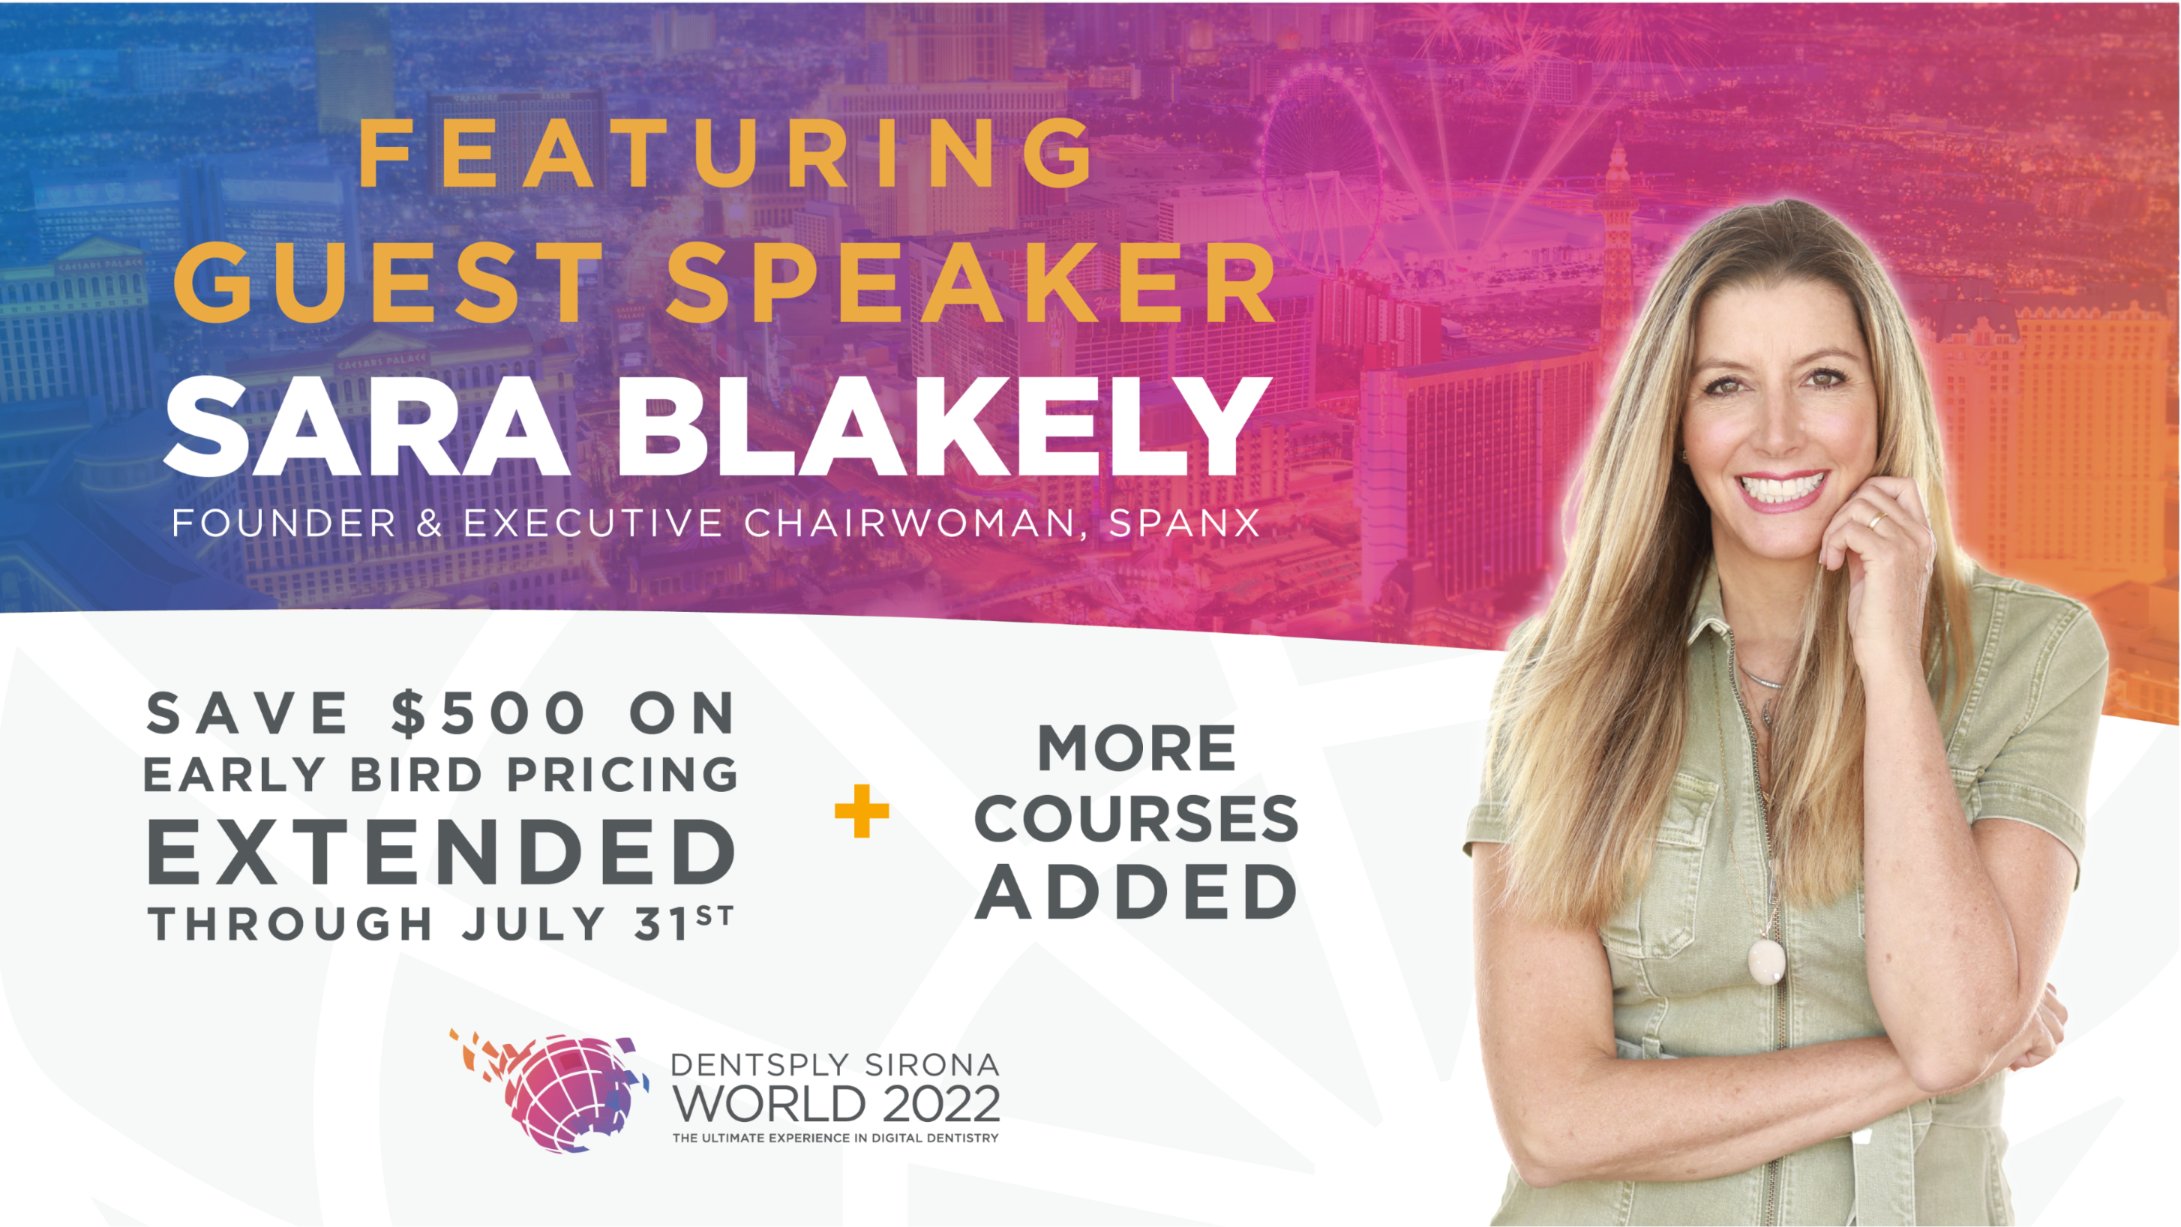 Spanx Founder to Speak at Dentsply Sirona World 2022